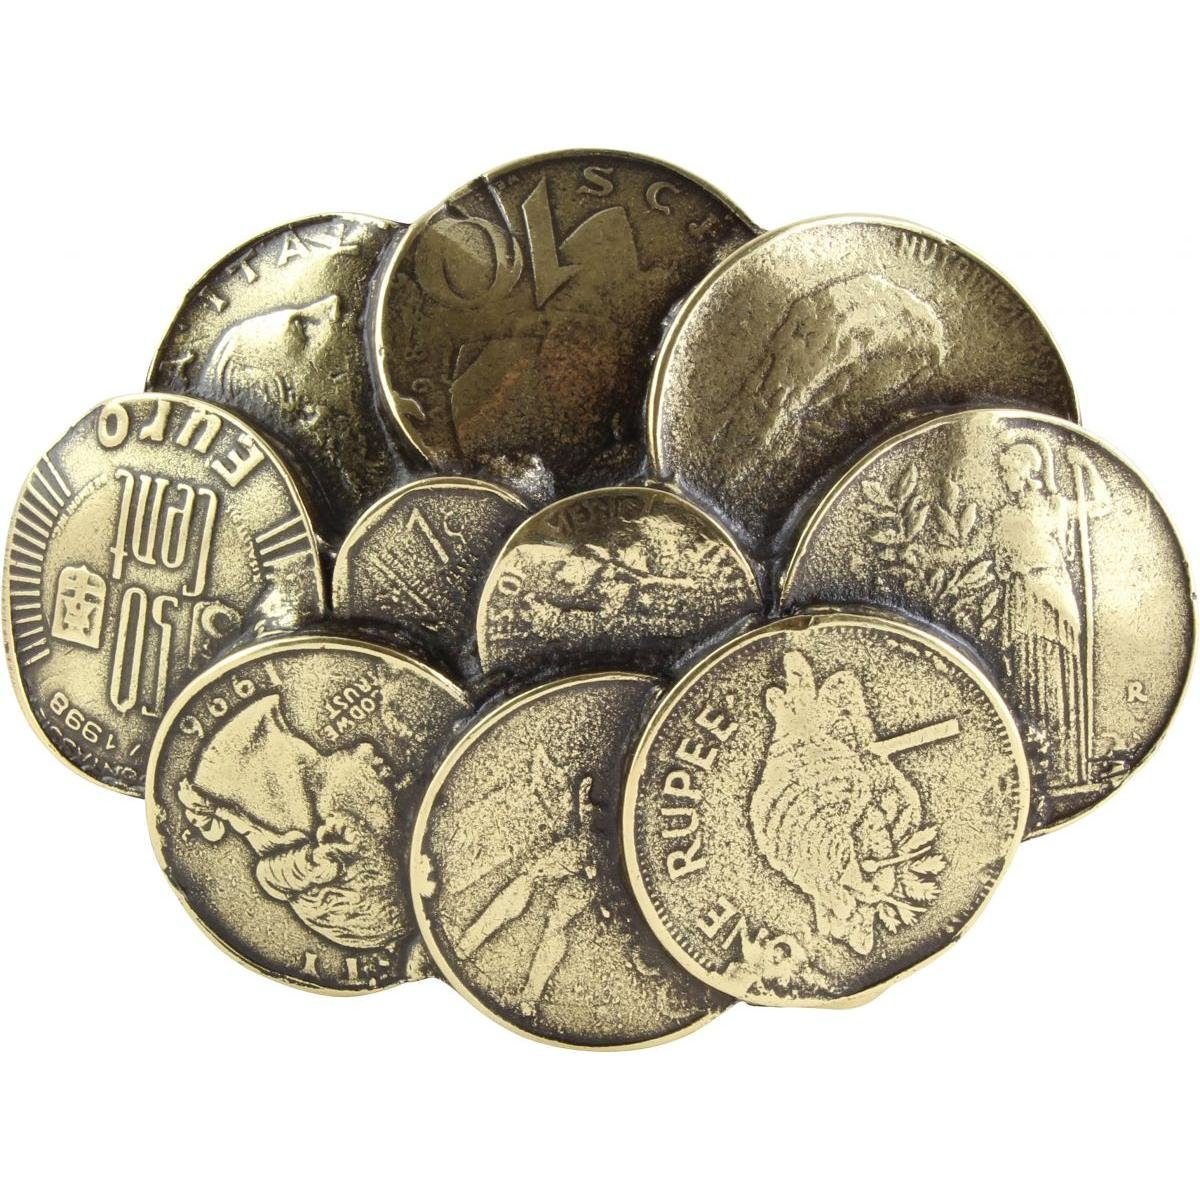 BELTINGER Gürtelschnalle Coins 4,0 cm - Buckle Wechselschließe Gürtelschließe 40mm - Gürtel bis Altmessing